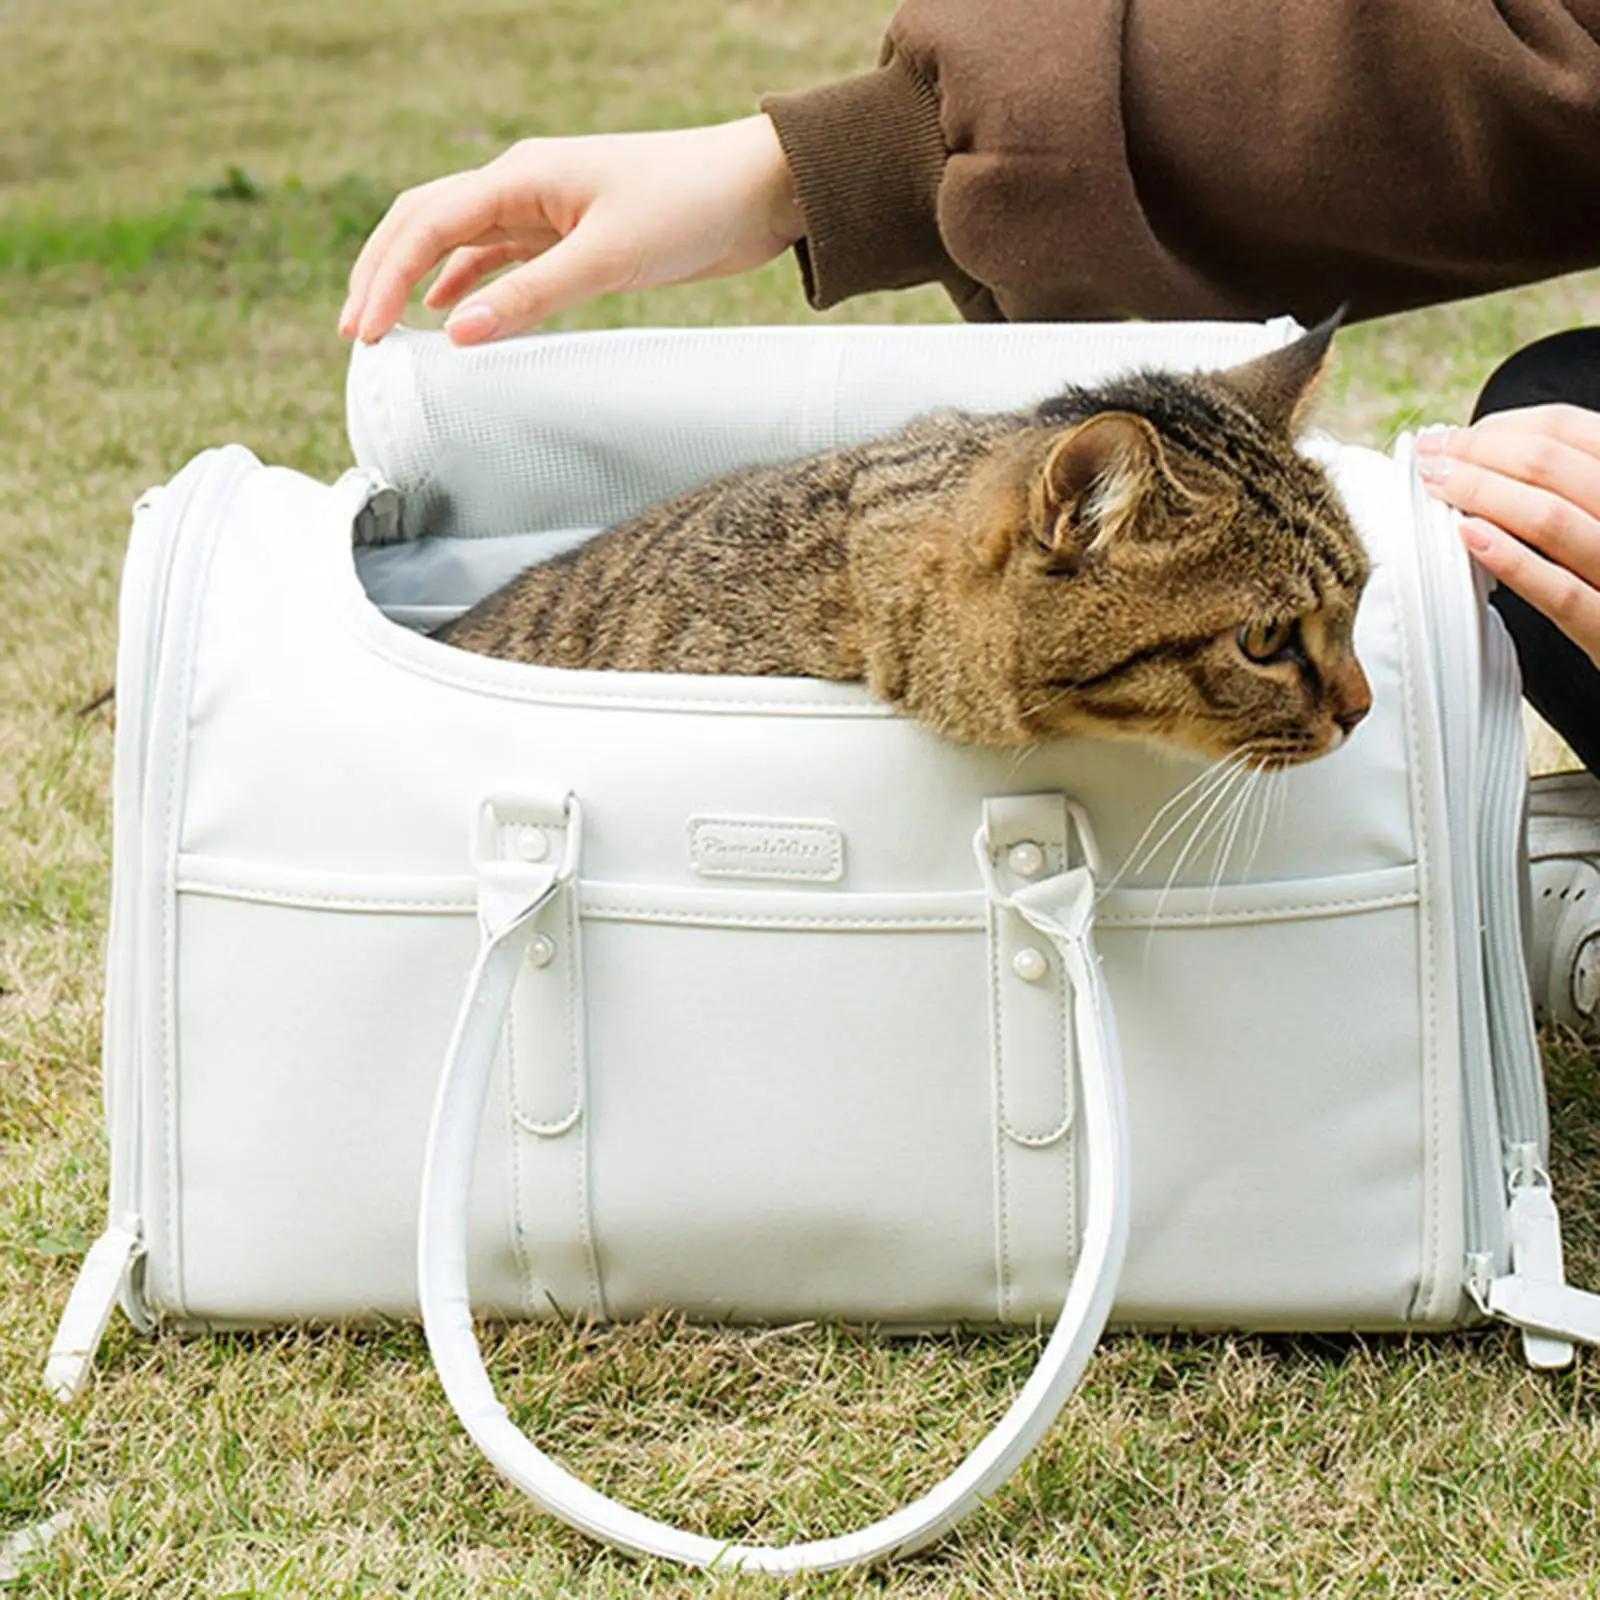 Pet Carrier Pet Travel Transport Bag Pet Bag Portable Tote Bag Dog Carrier Cat Carrier Bag for Dog Cat Outdoor Sightseeing